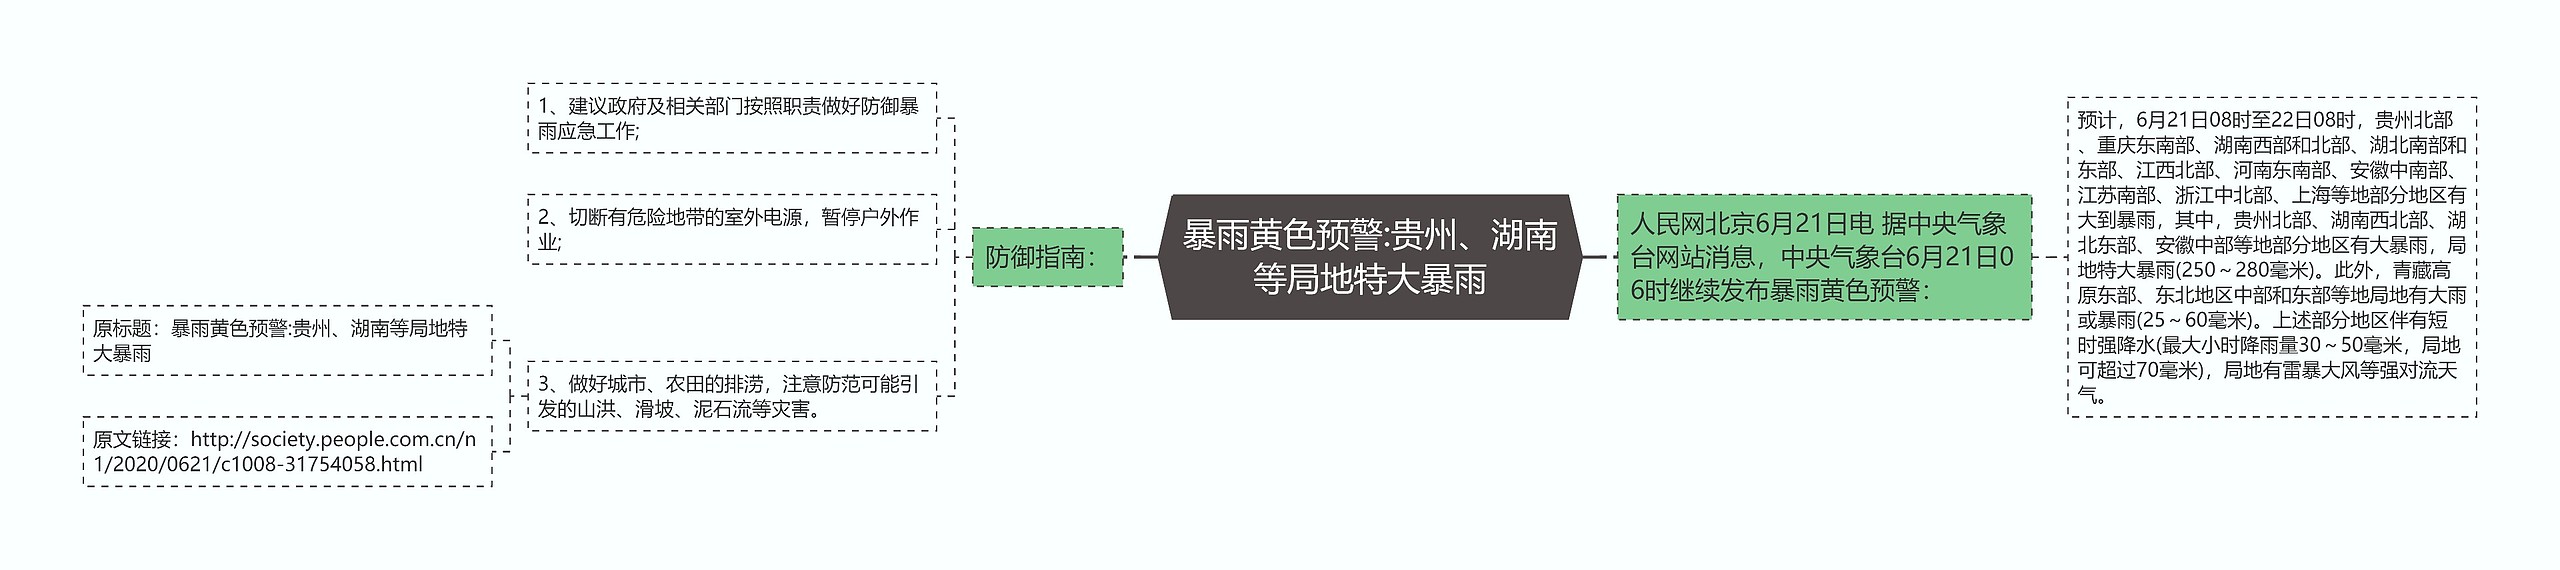 暴雨黄色预警:贵州、湖南等局地特大暴雨思维导图